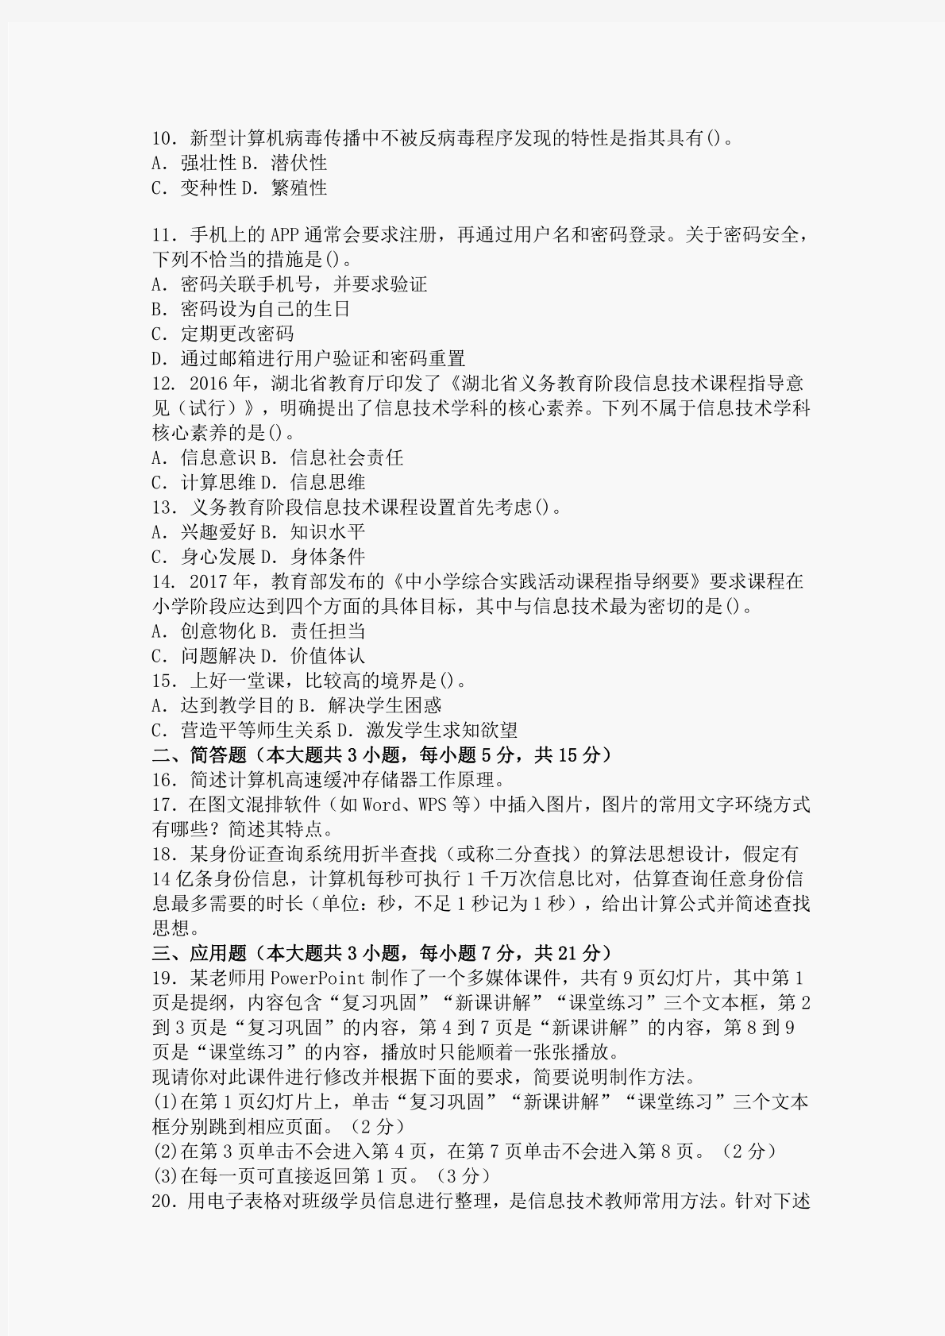 2018年湖北省农村义务教育学校教师公开招聘考试小学信息技术试题